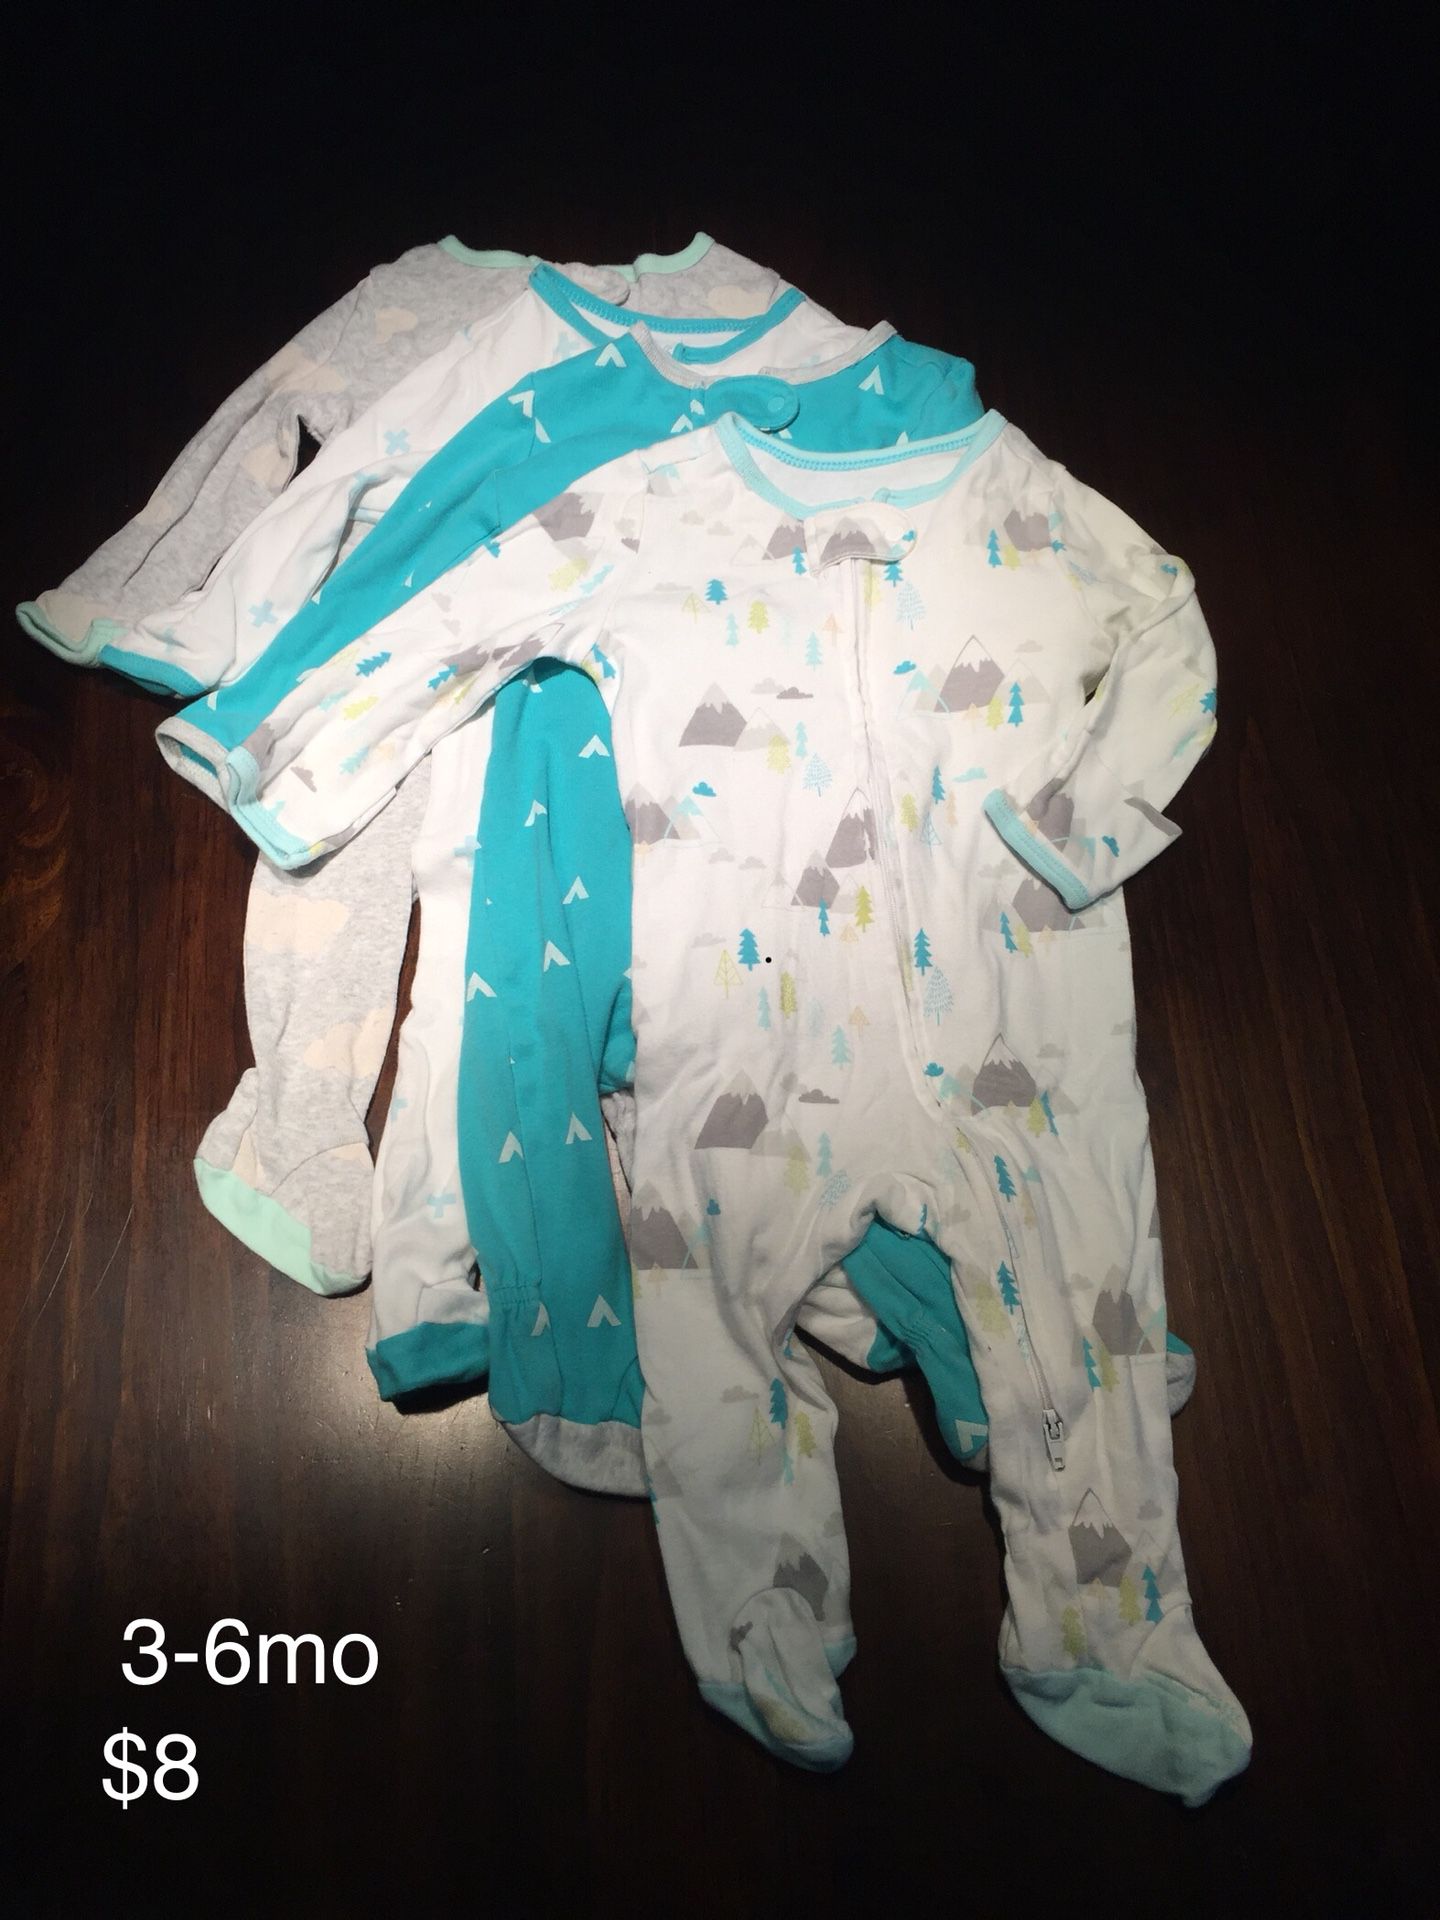 3-6mo Baby Boy Clothing